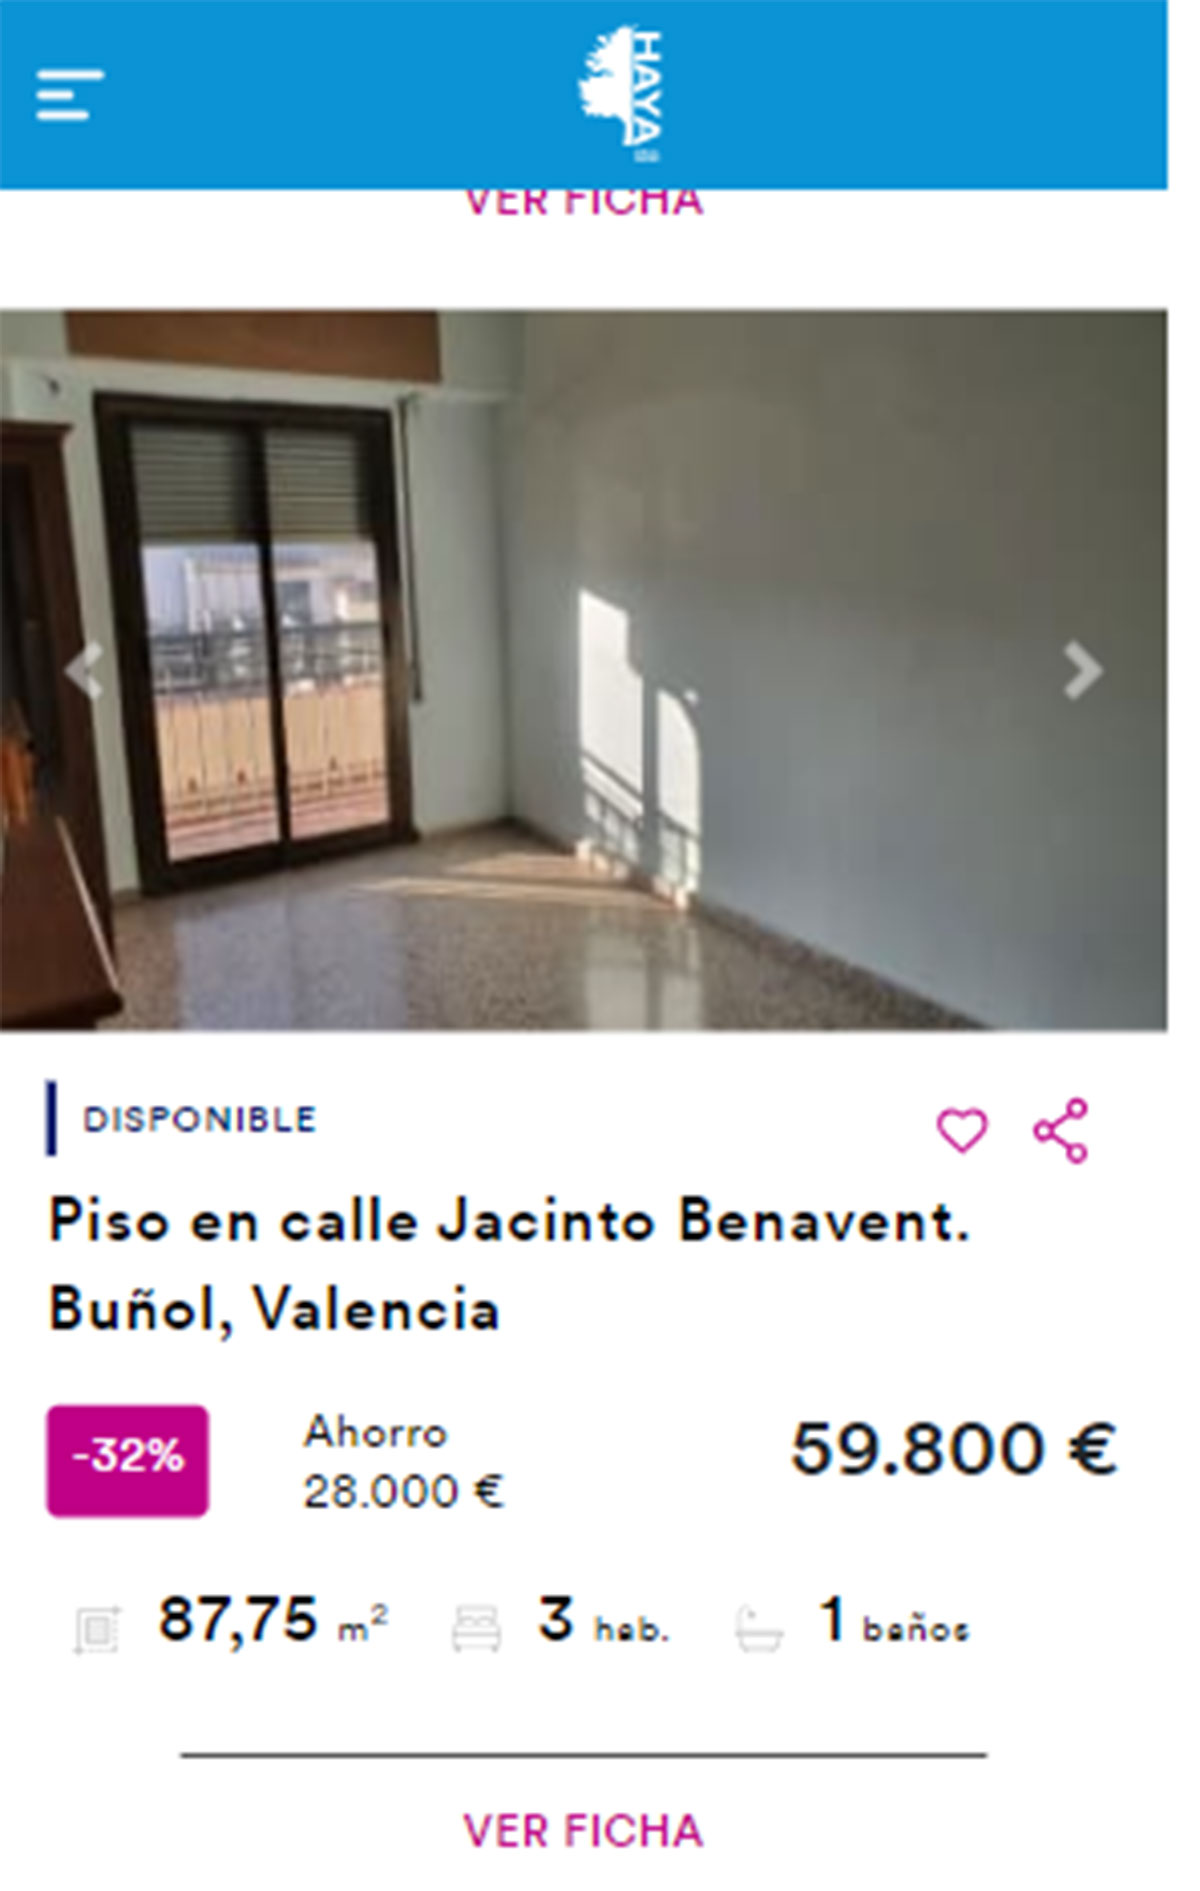 Piso para entrar a vivir por 59.000 euros